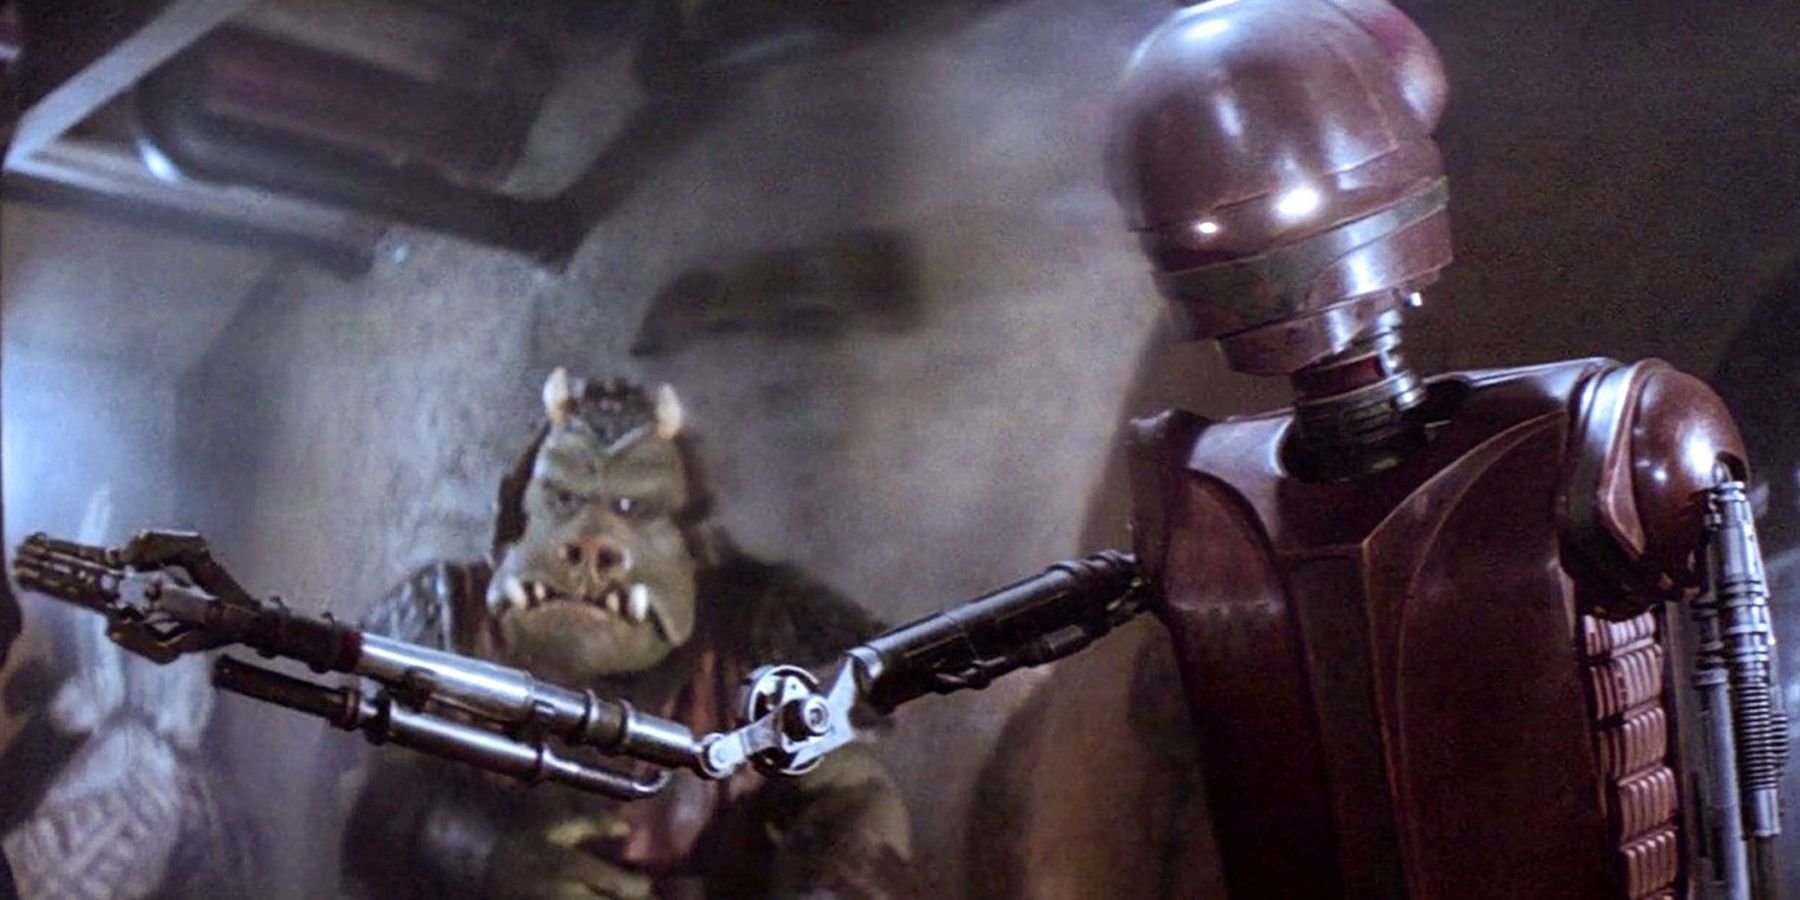 2 droids droid torture Cropped